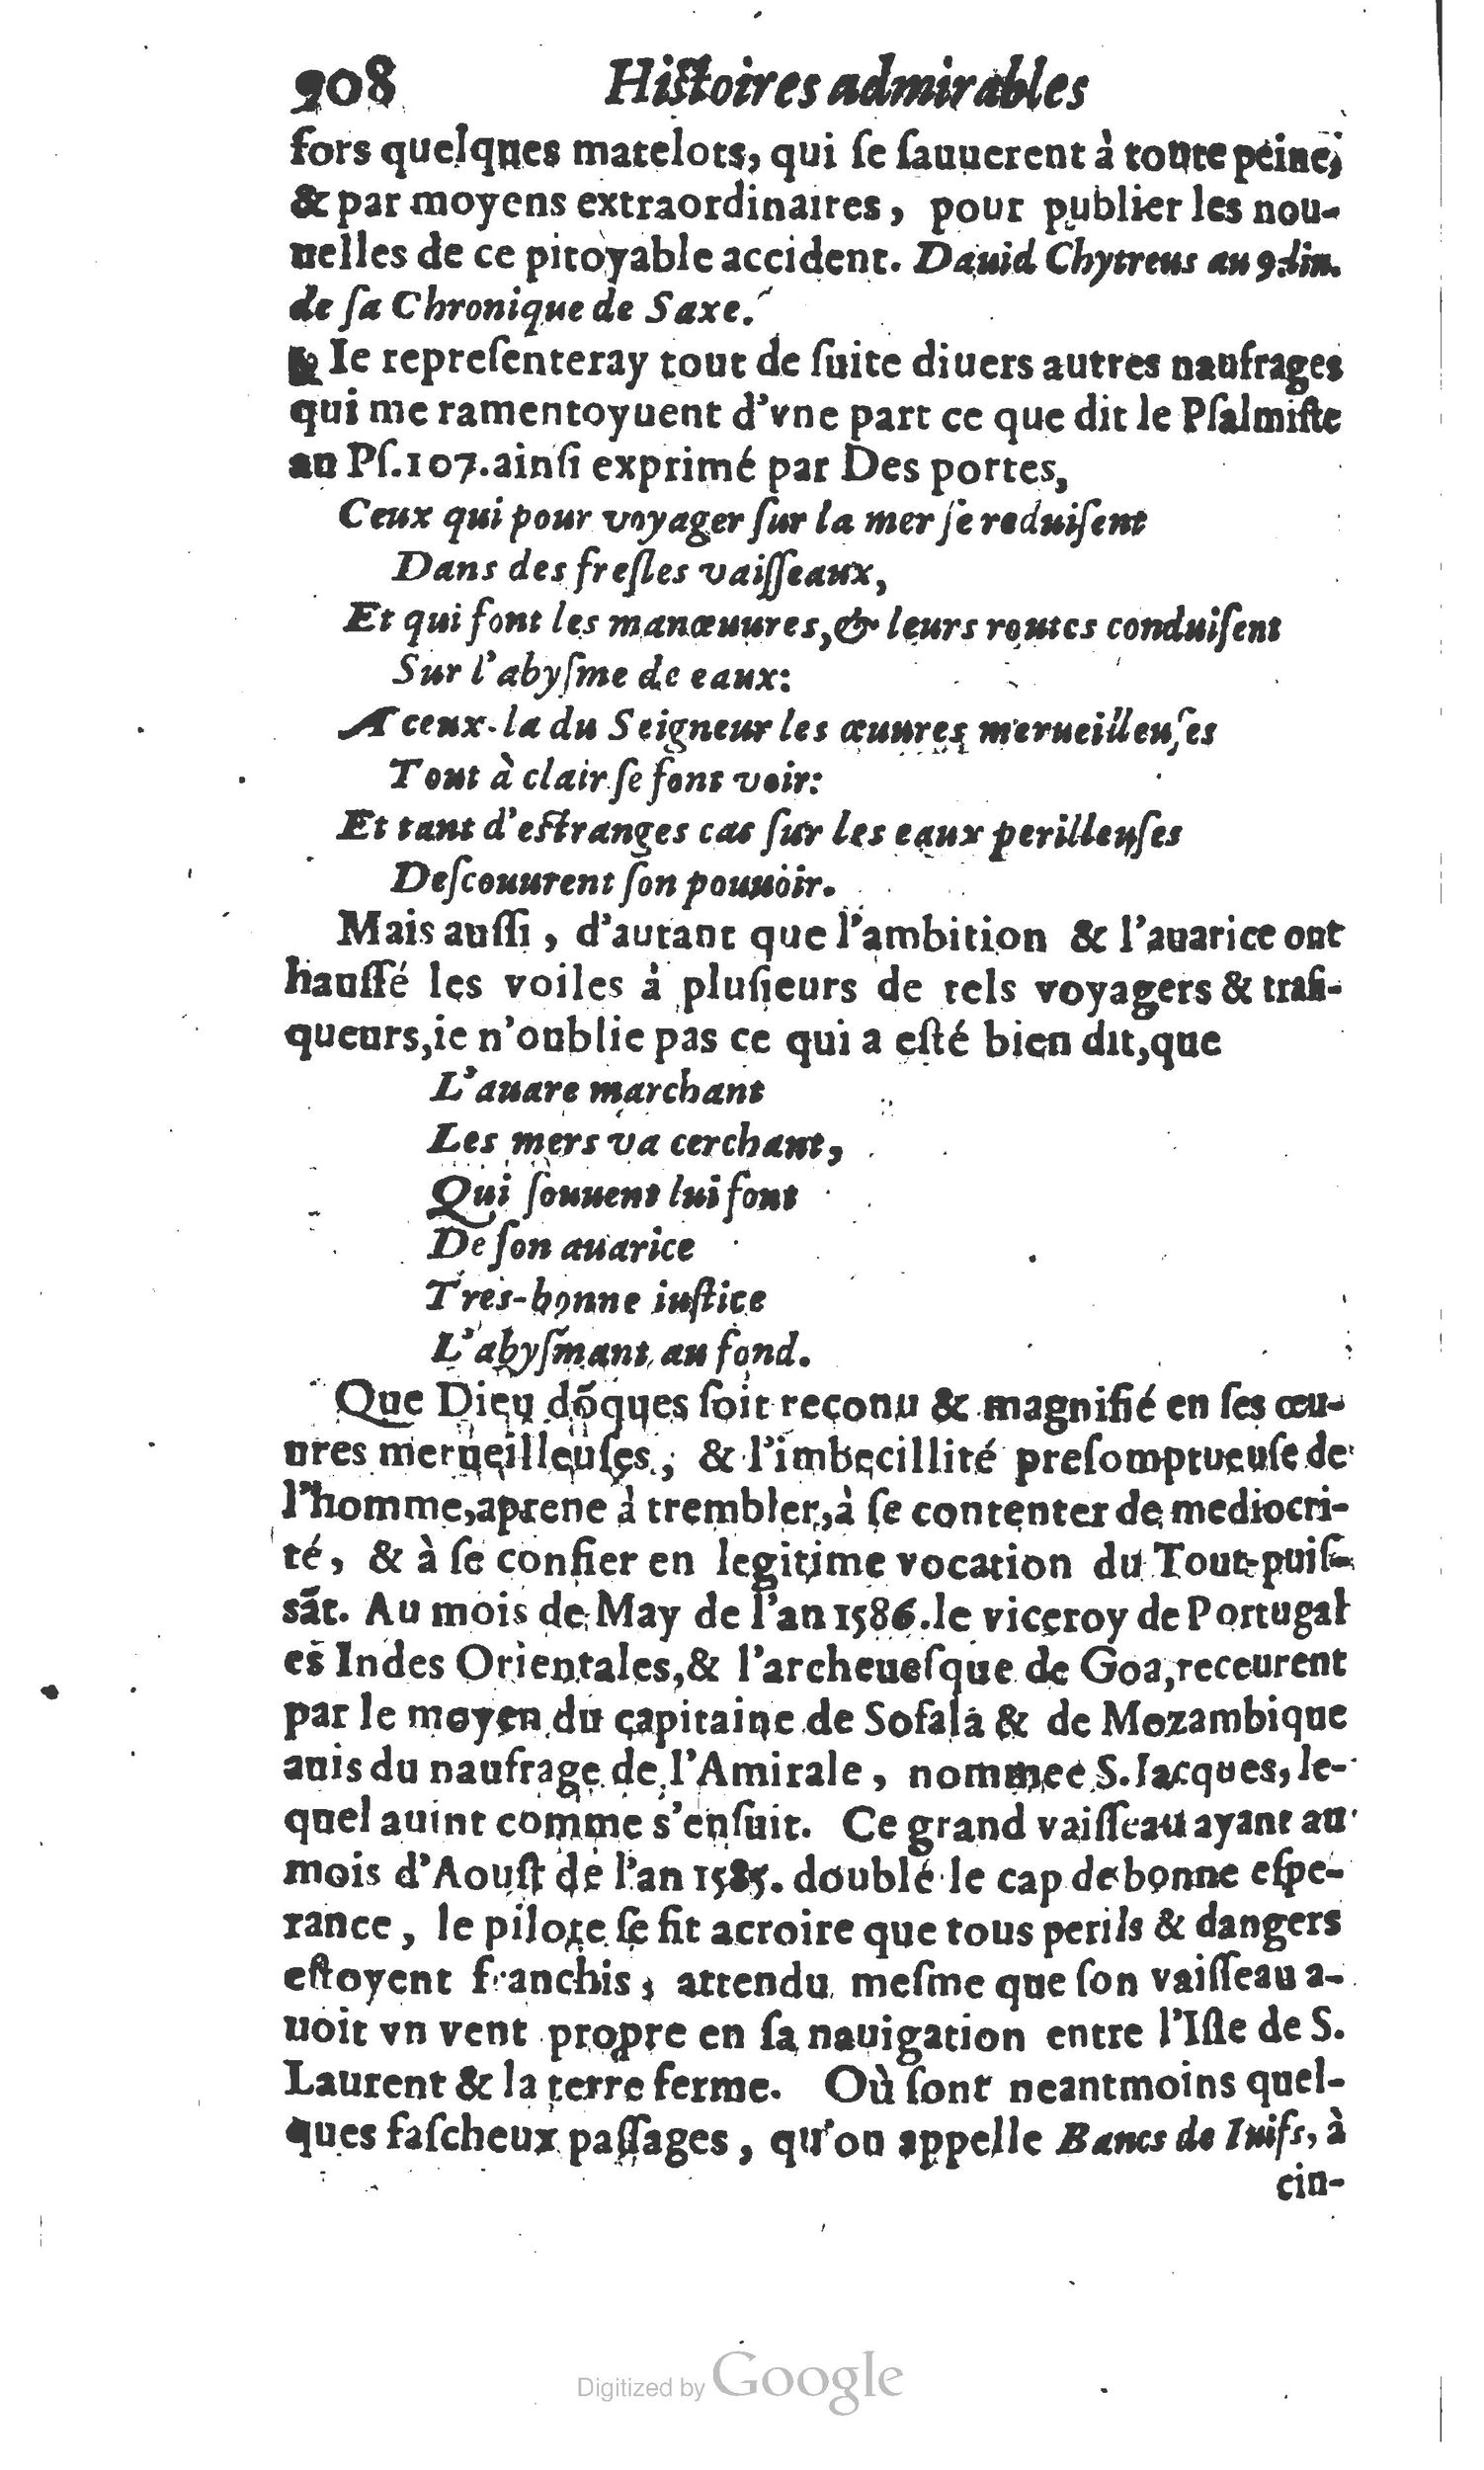 1610 Trésor d’histoires admirables et mémorables de nostre temps Marceau Princeton_Page_0929.jpg